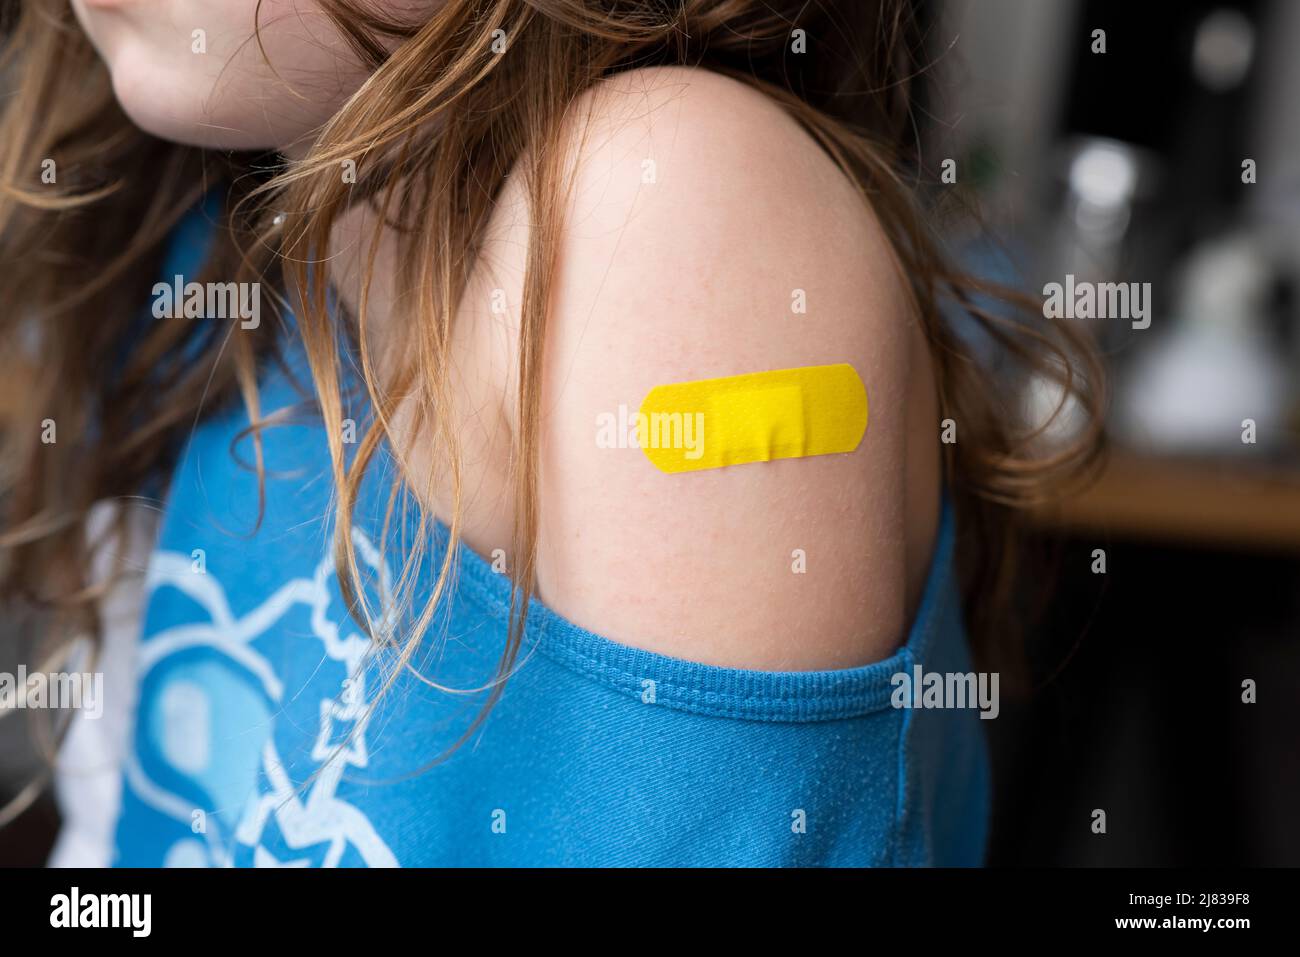 Petite fille avec un aide-bande sur ses mains, vaccinée contre l'infection à coronavirus. Vaccination contre la COVID-19. CopySpace. Bannière haute résolution. Photo de haute qualité Banque D'Images